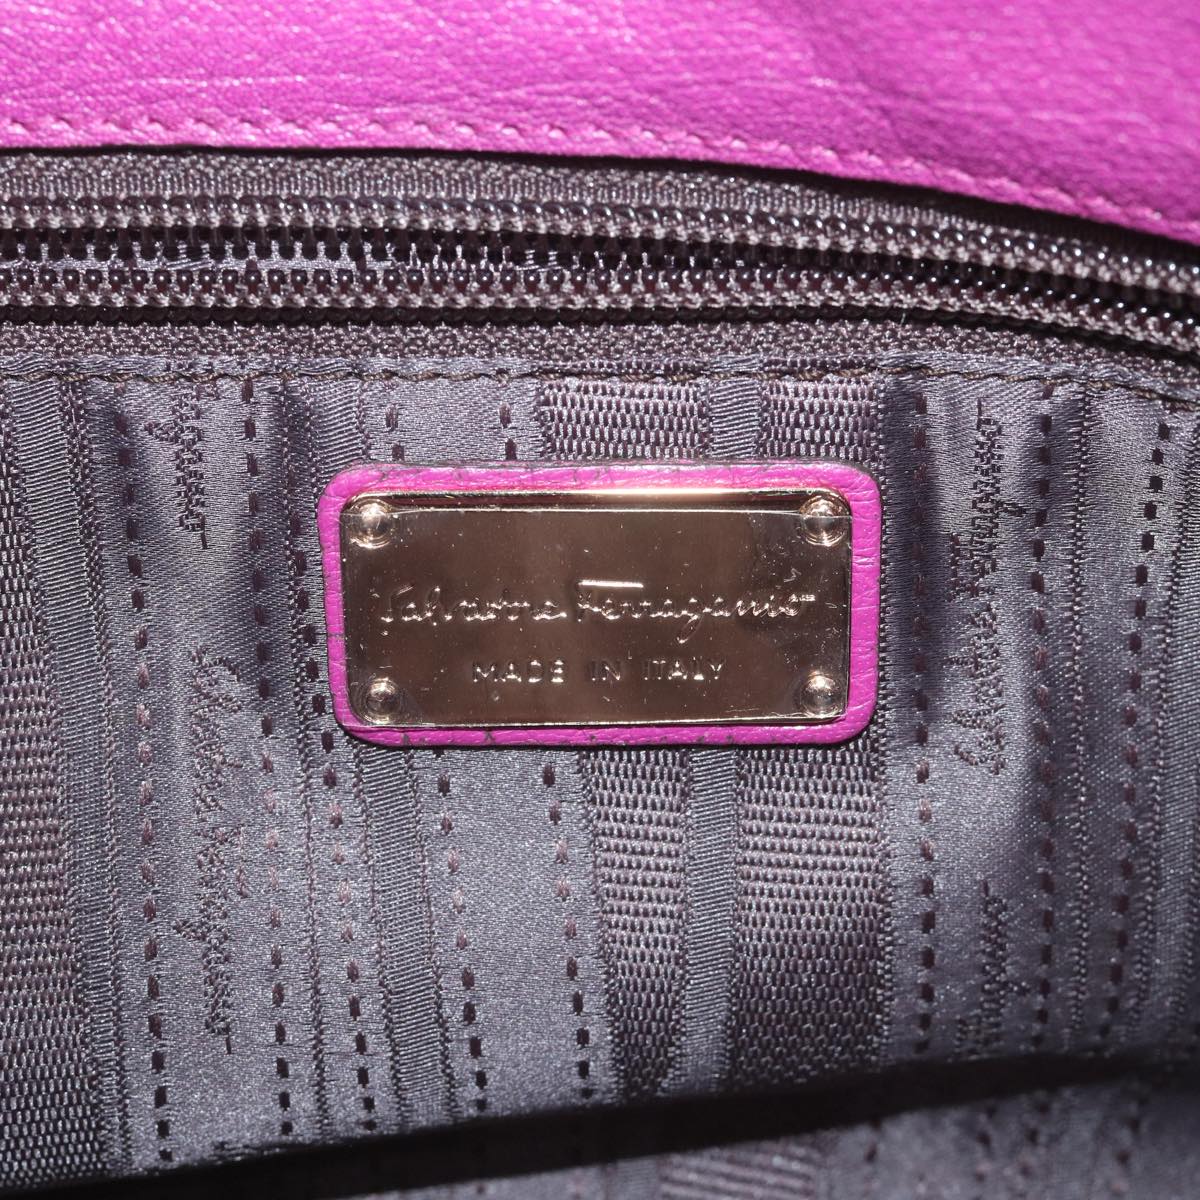 Salvatore Ferragamo Gancini Chain Tote Bag Leather Purple Auth 58628